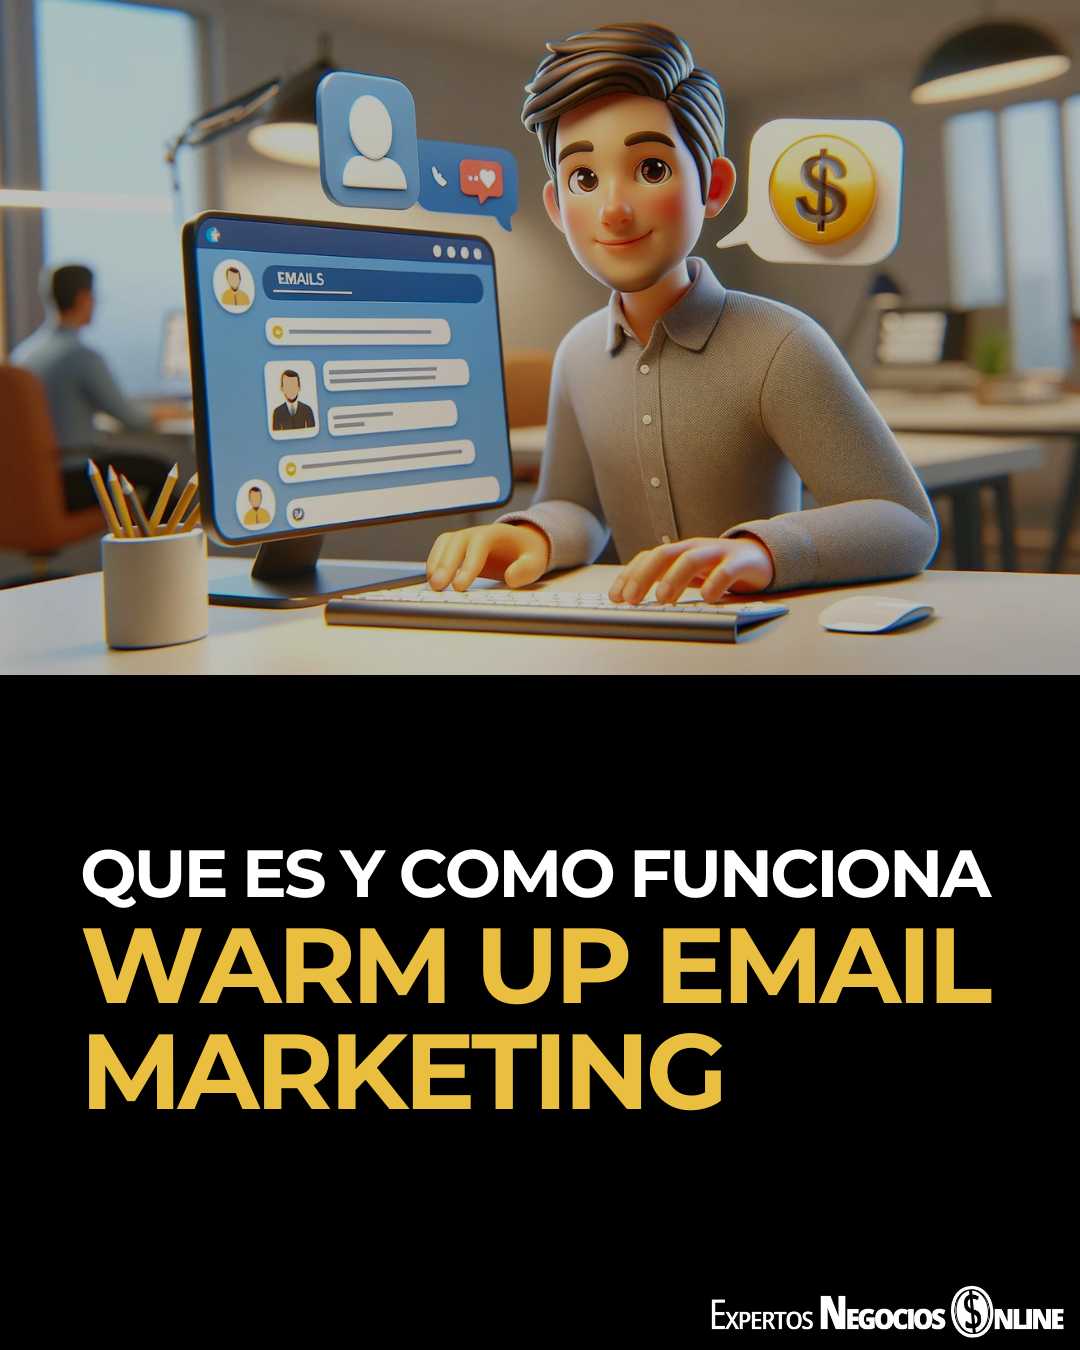 Warm Up Email Marketing que es, como funciona y cuales son sus claves